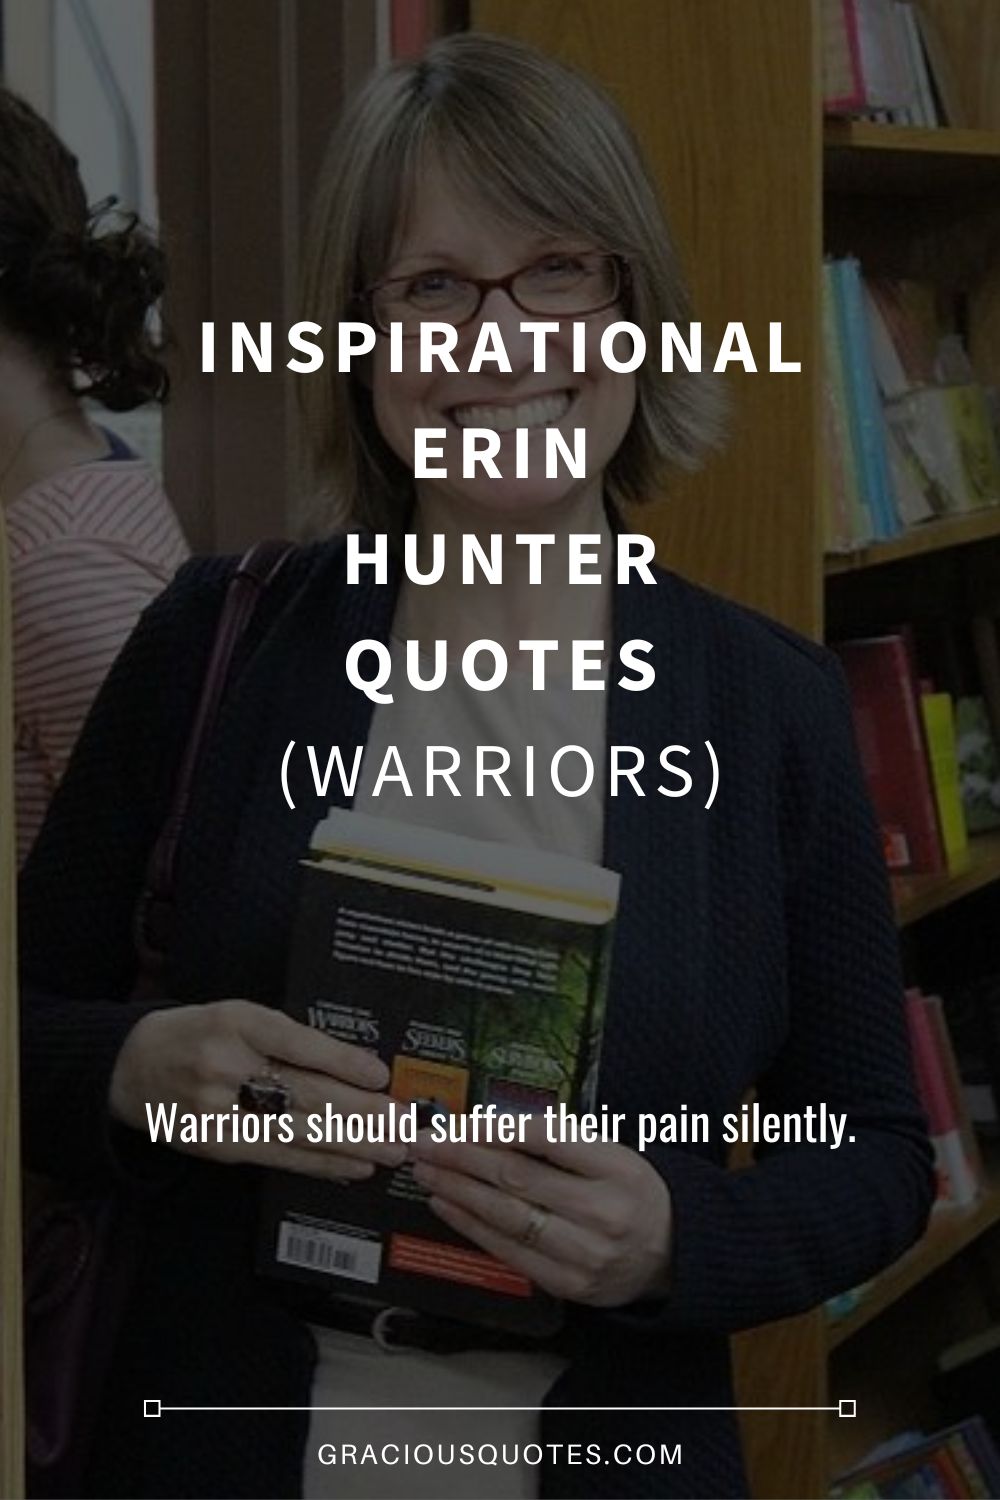 Inspirational Erin Hunter Quotes (WARRIORS) - Gracious Quotes